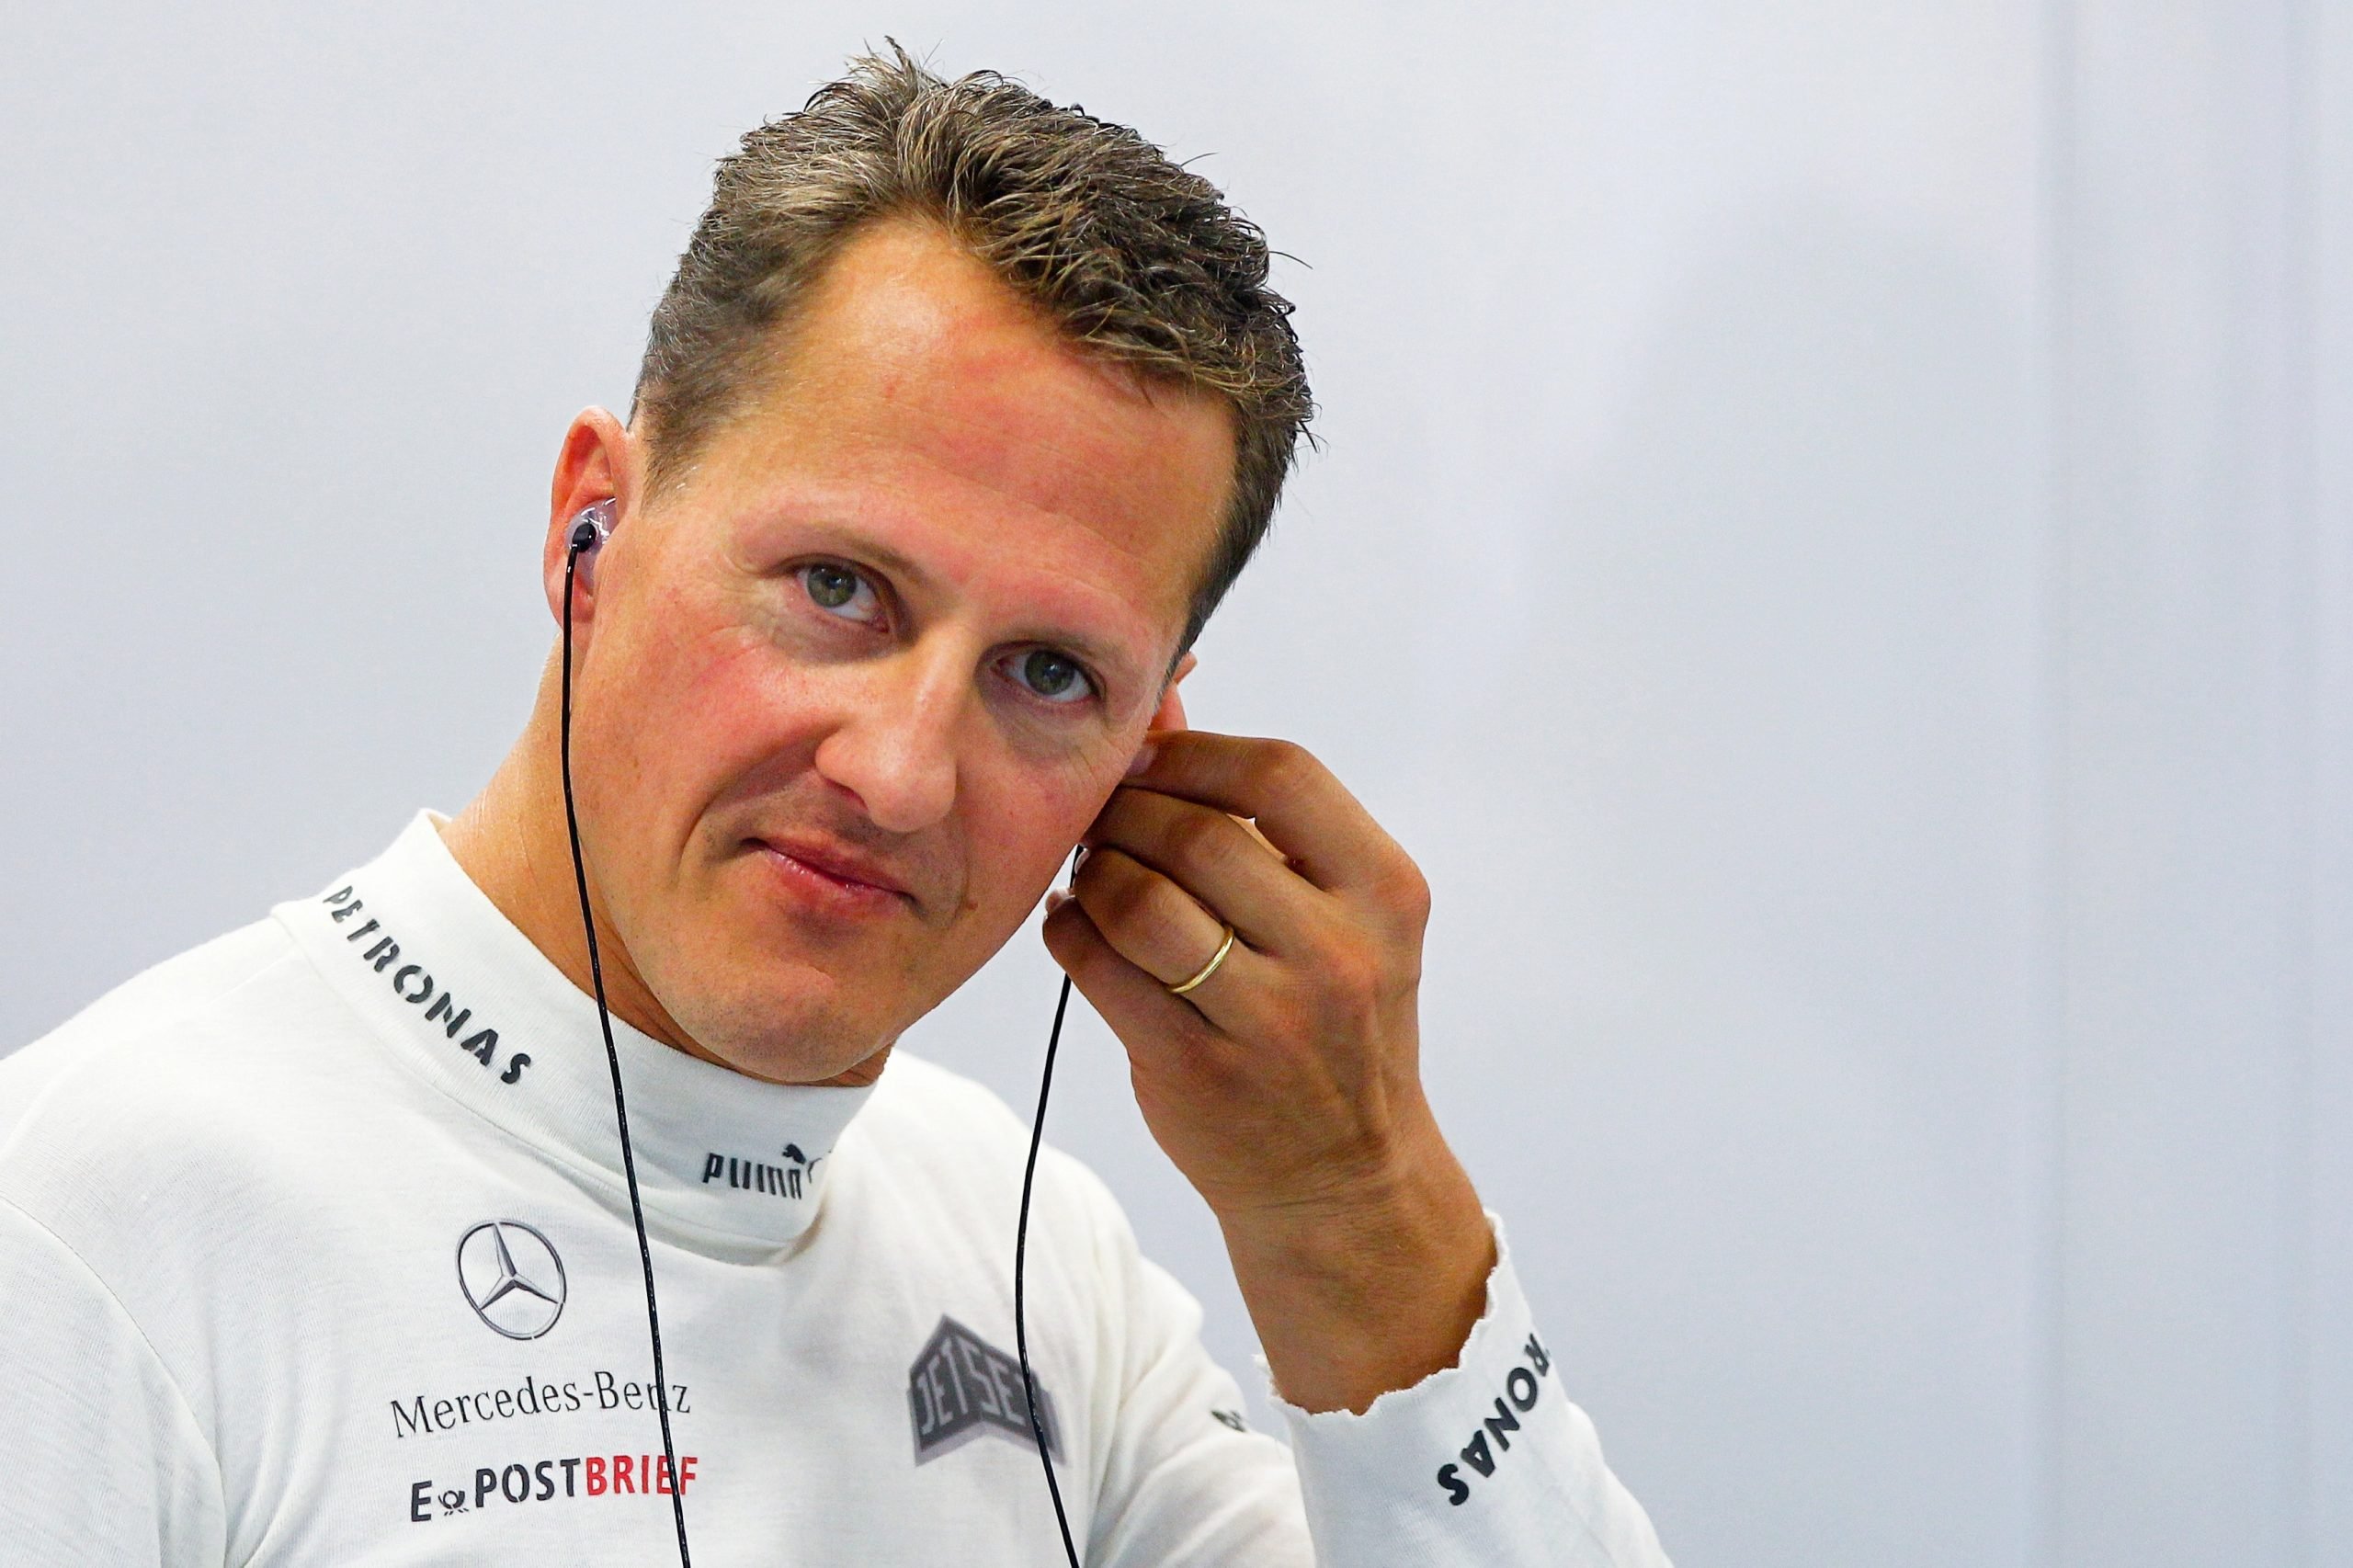 Michael Schumacher, succede tutto all’improvviso: la notizia di queste ore è clamorosa ➤ Buzzday.info